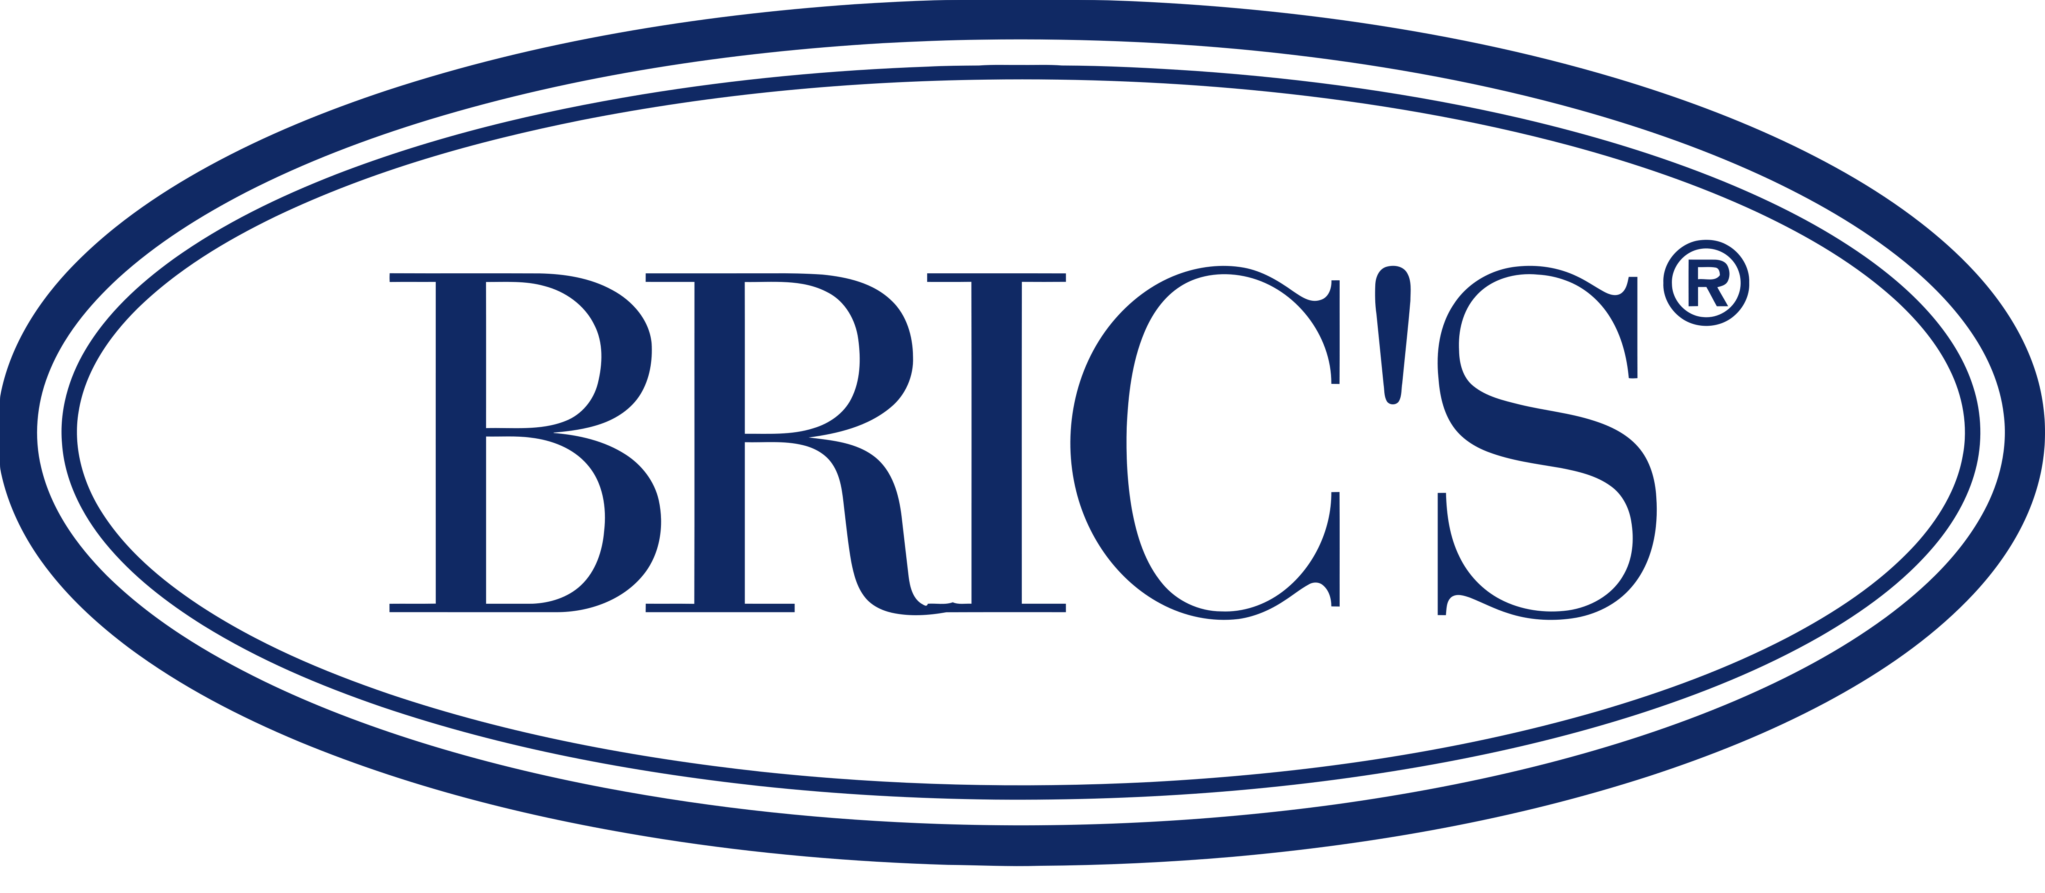 Bric’s